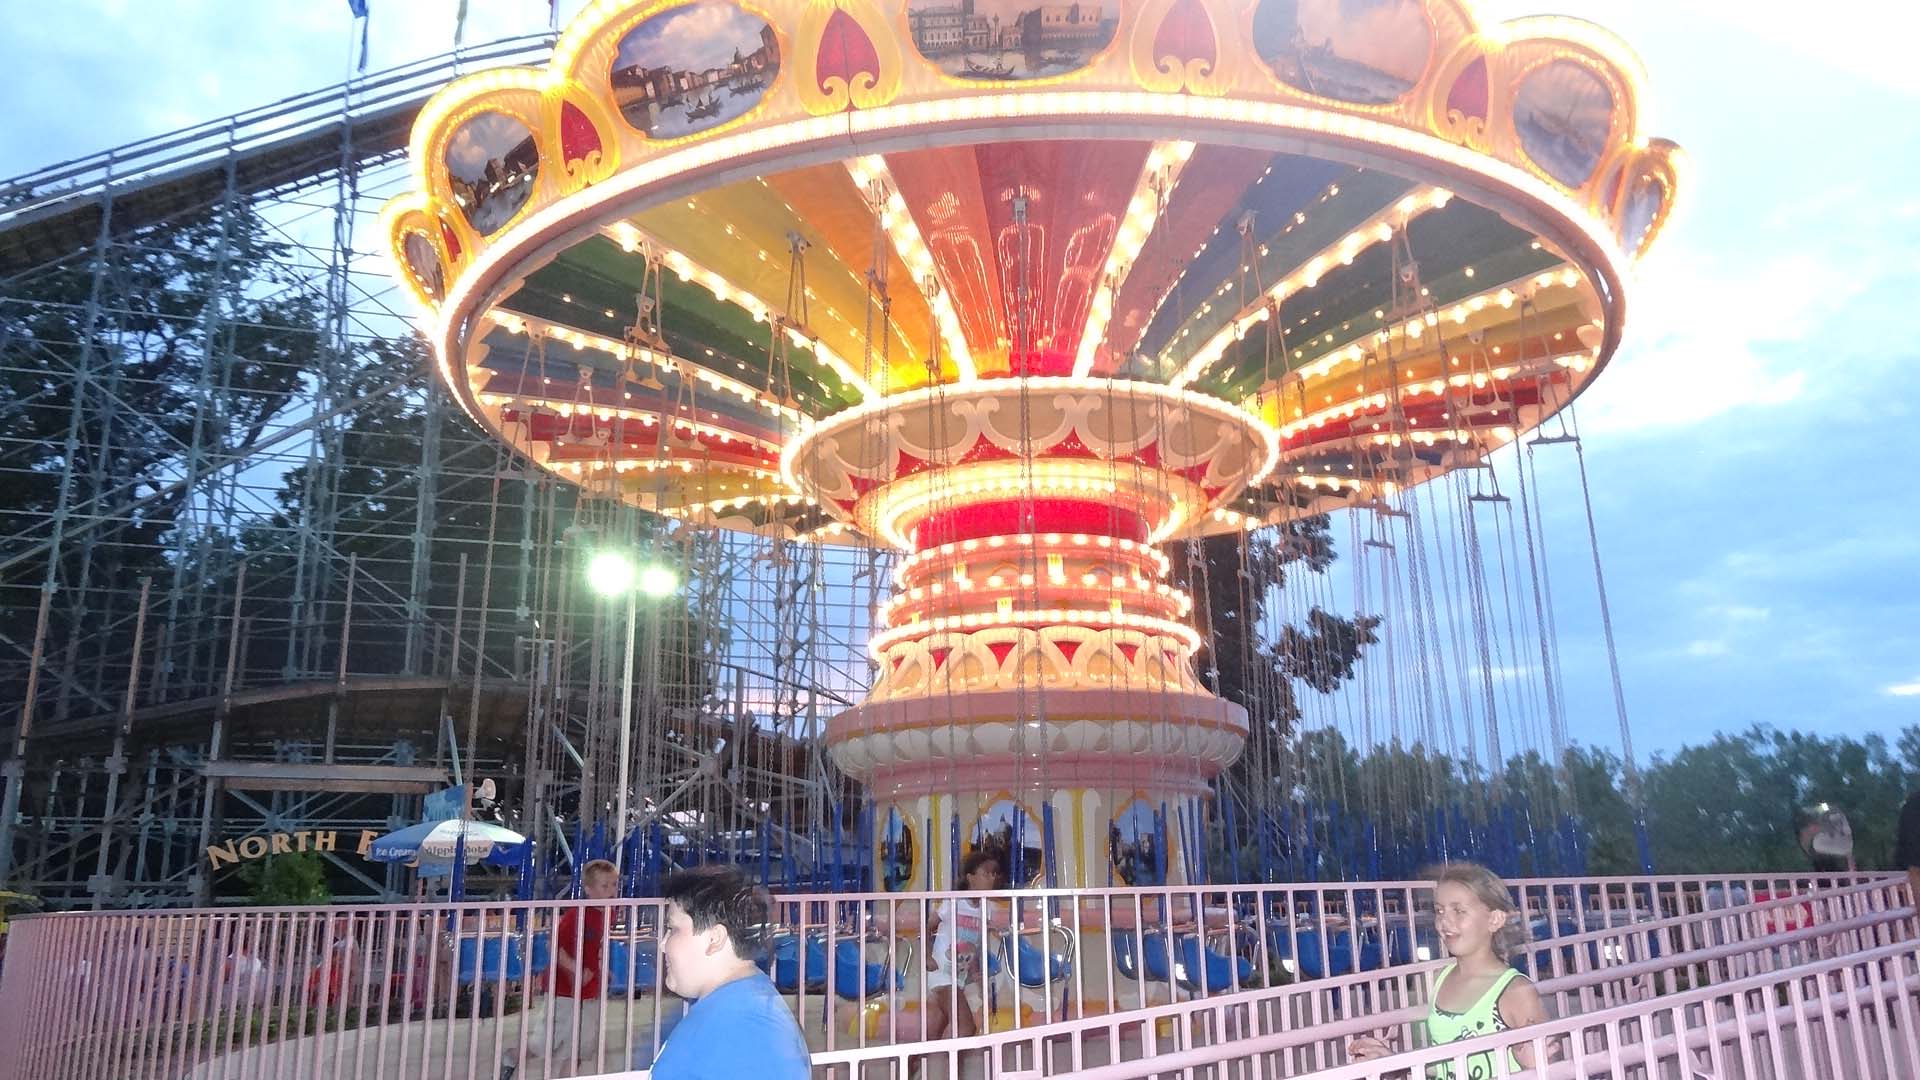 Waldameer Amusement Park - Flying Swings